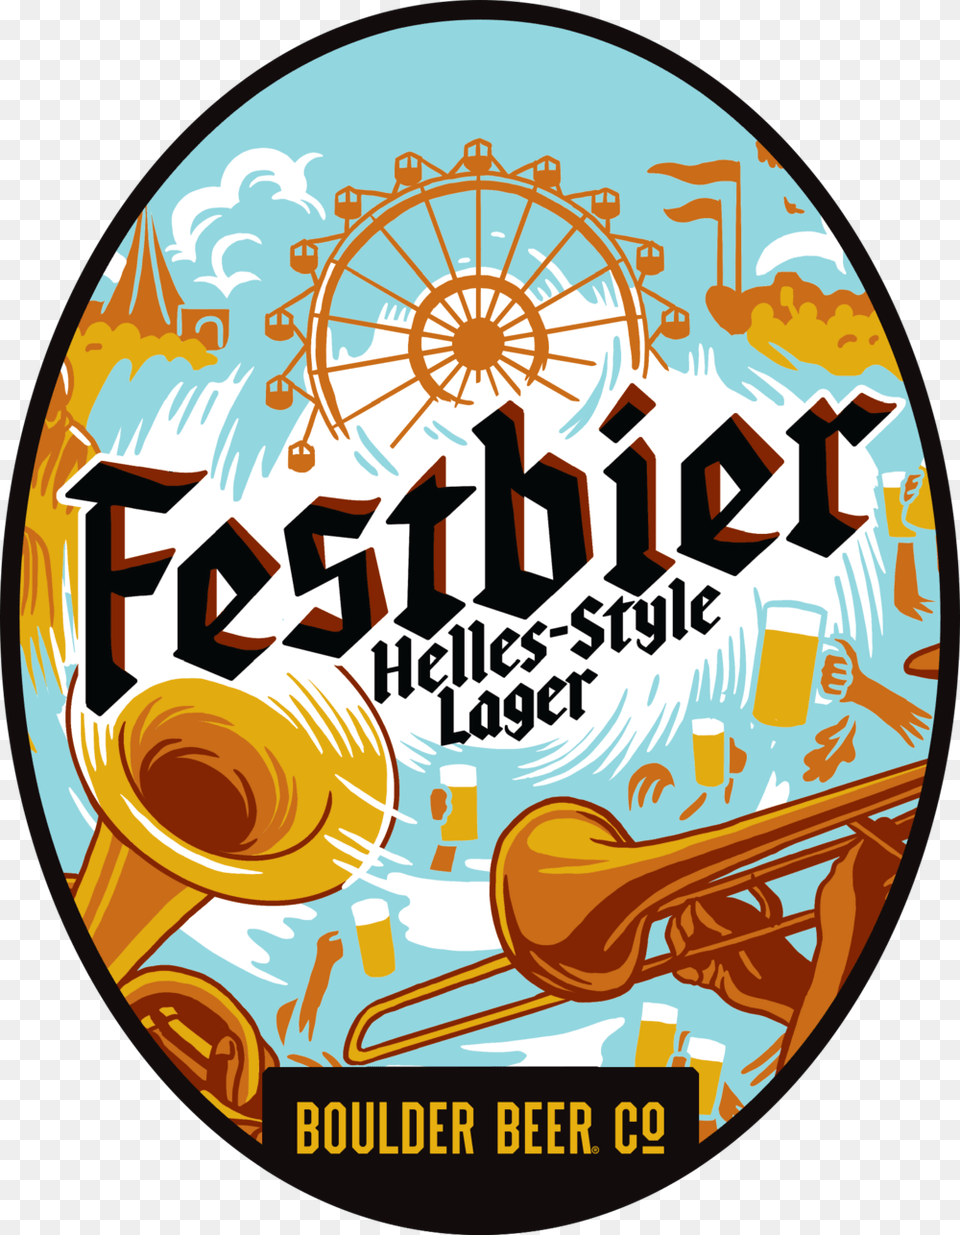 Boulder Beer Festbier Oval Weihenstephaner Festbier, Machine, Wheel, Musical Instrument Free Transparent Png